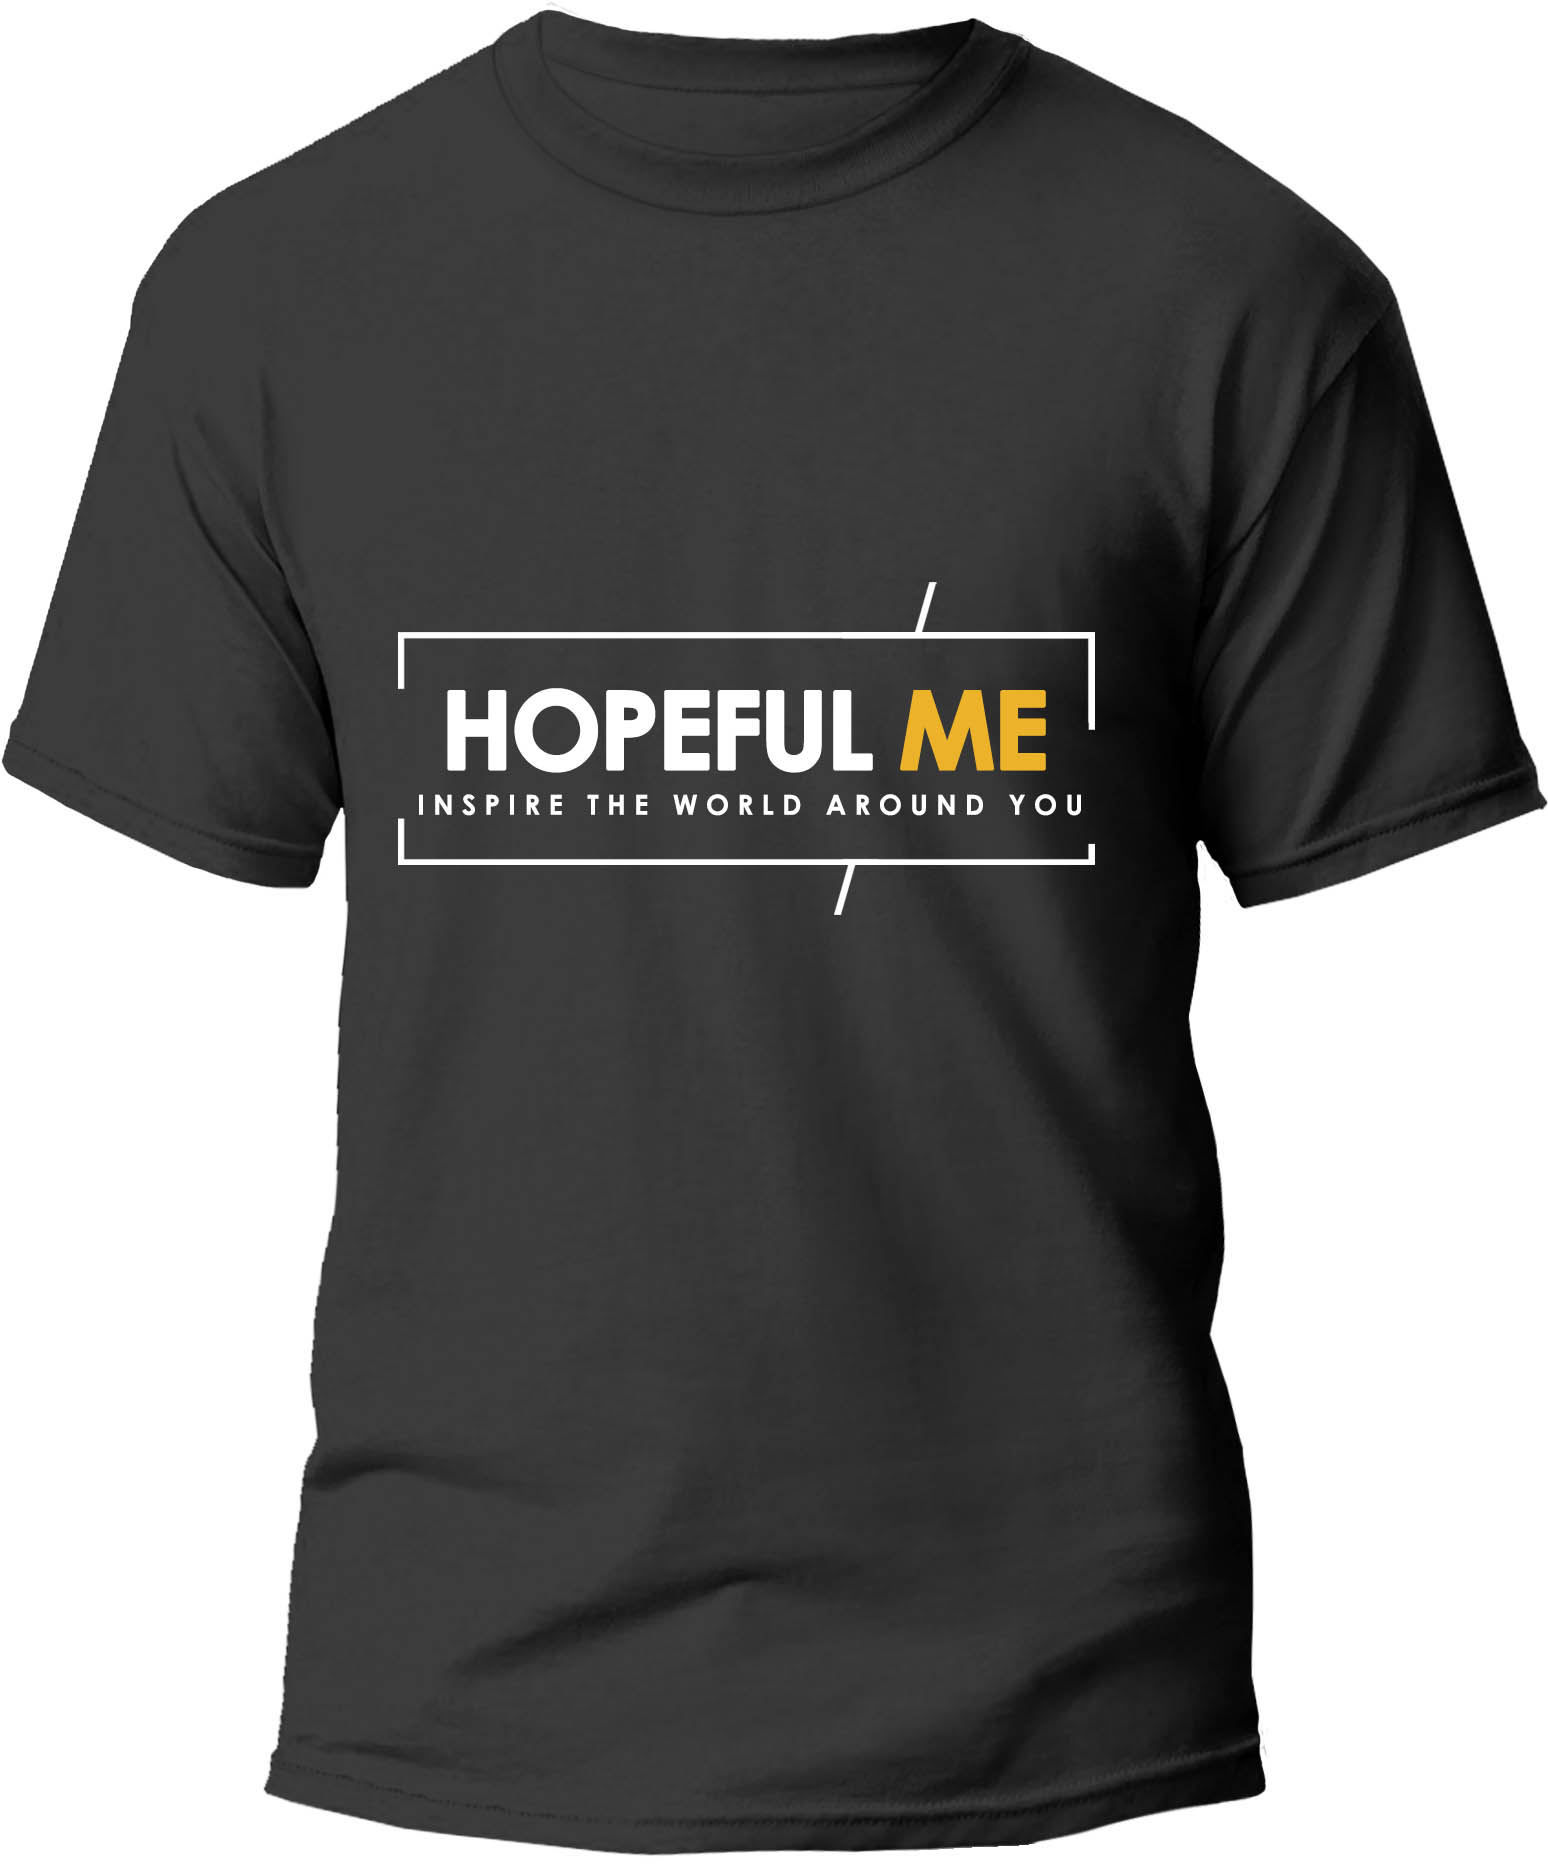 HopefulMe Tshirt